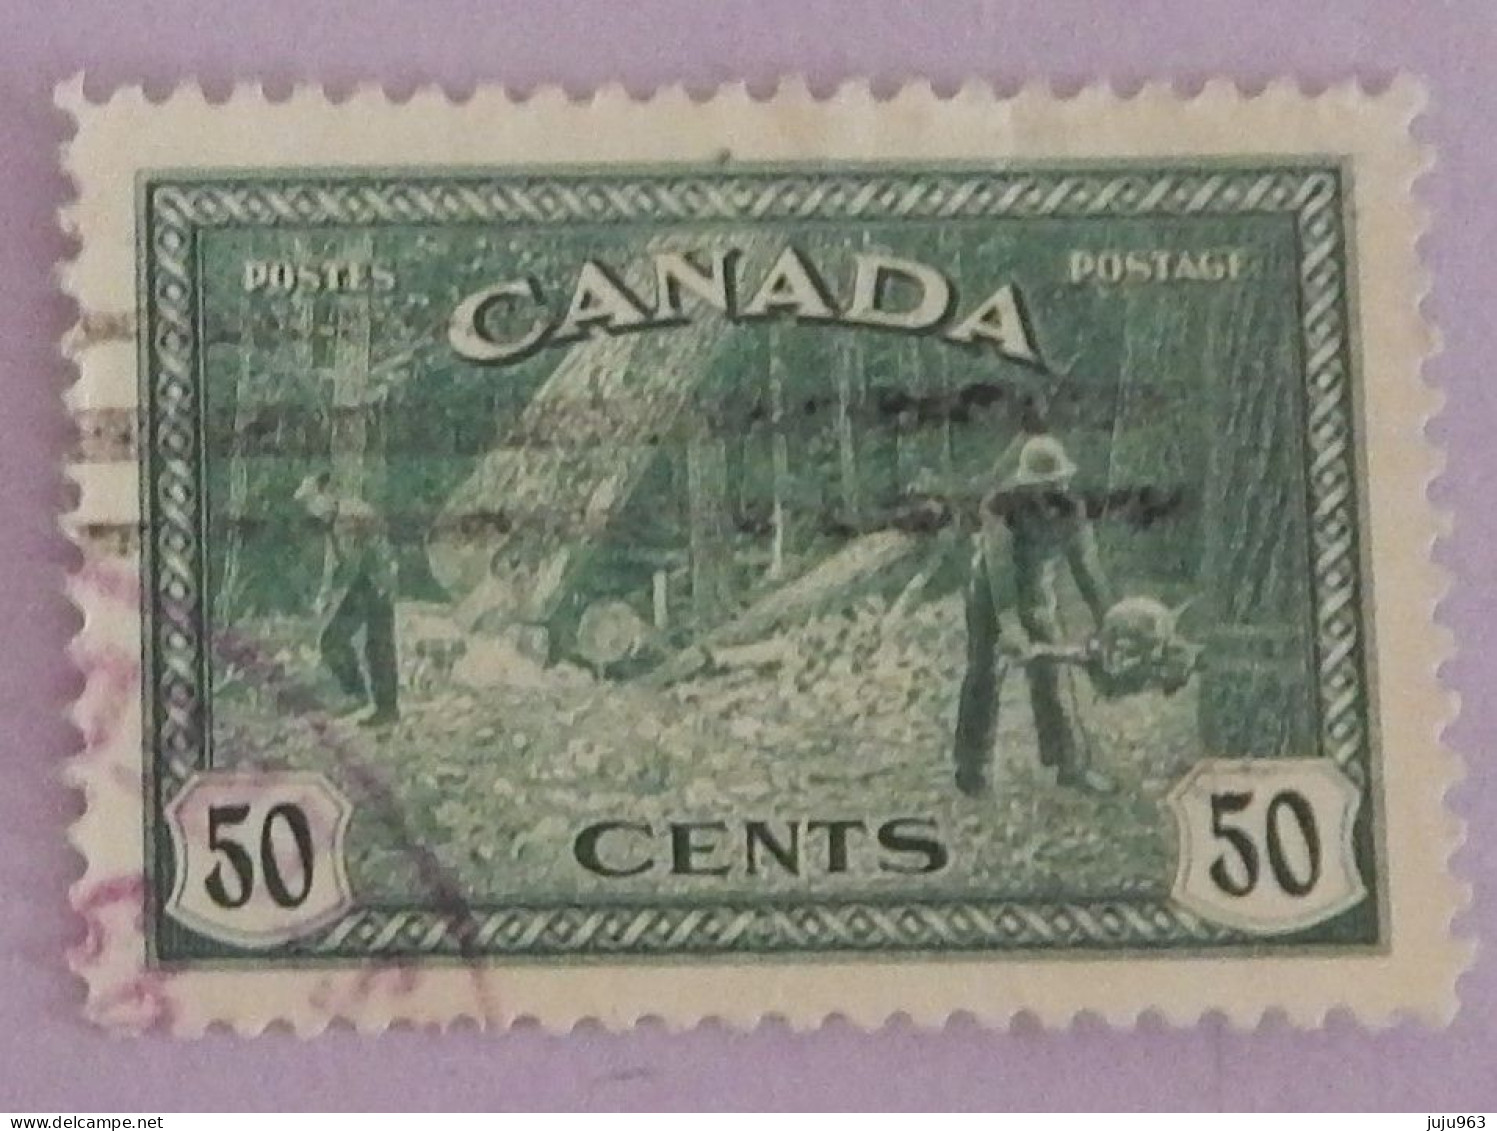 CANADA YT 223 OBLITERE "ABATTAGE D ARBRES EN COLOMBIE BRITANNIQUE" ANNÉE 1946 - Used Stamps